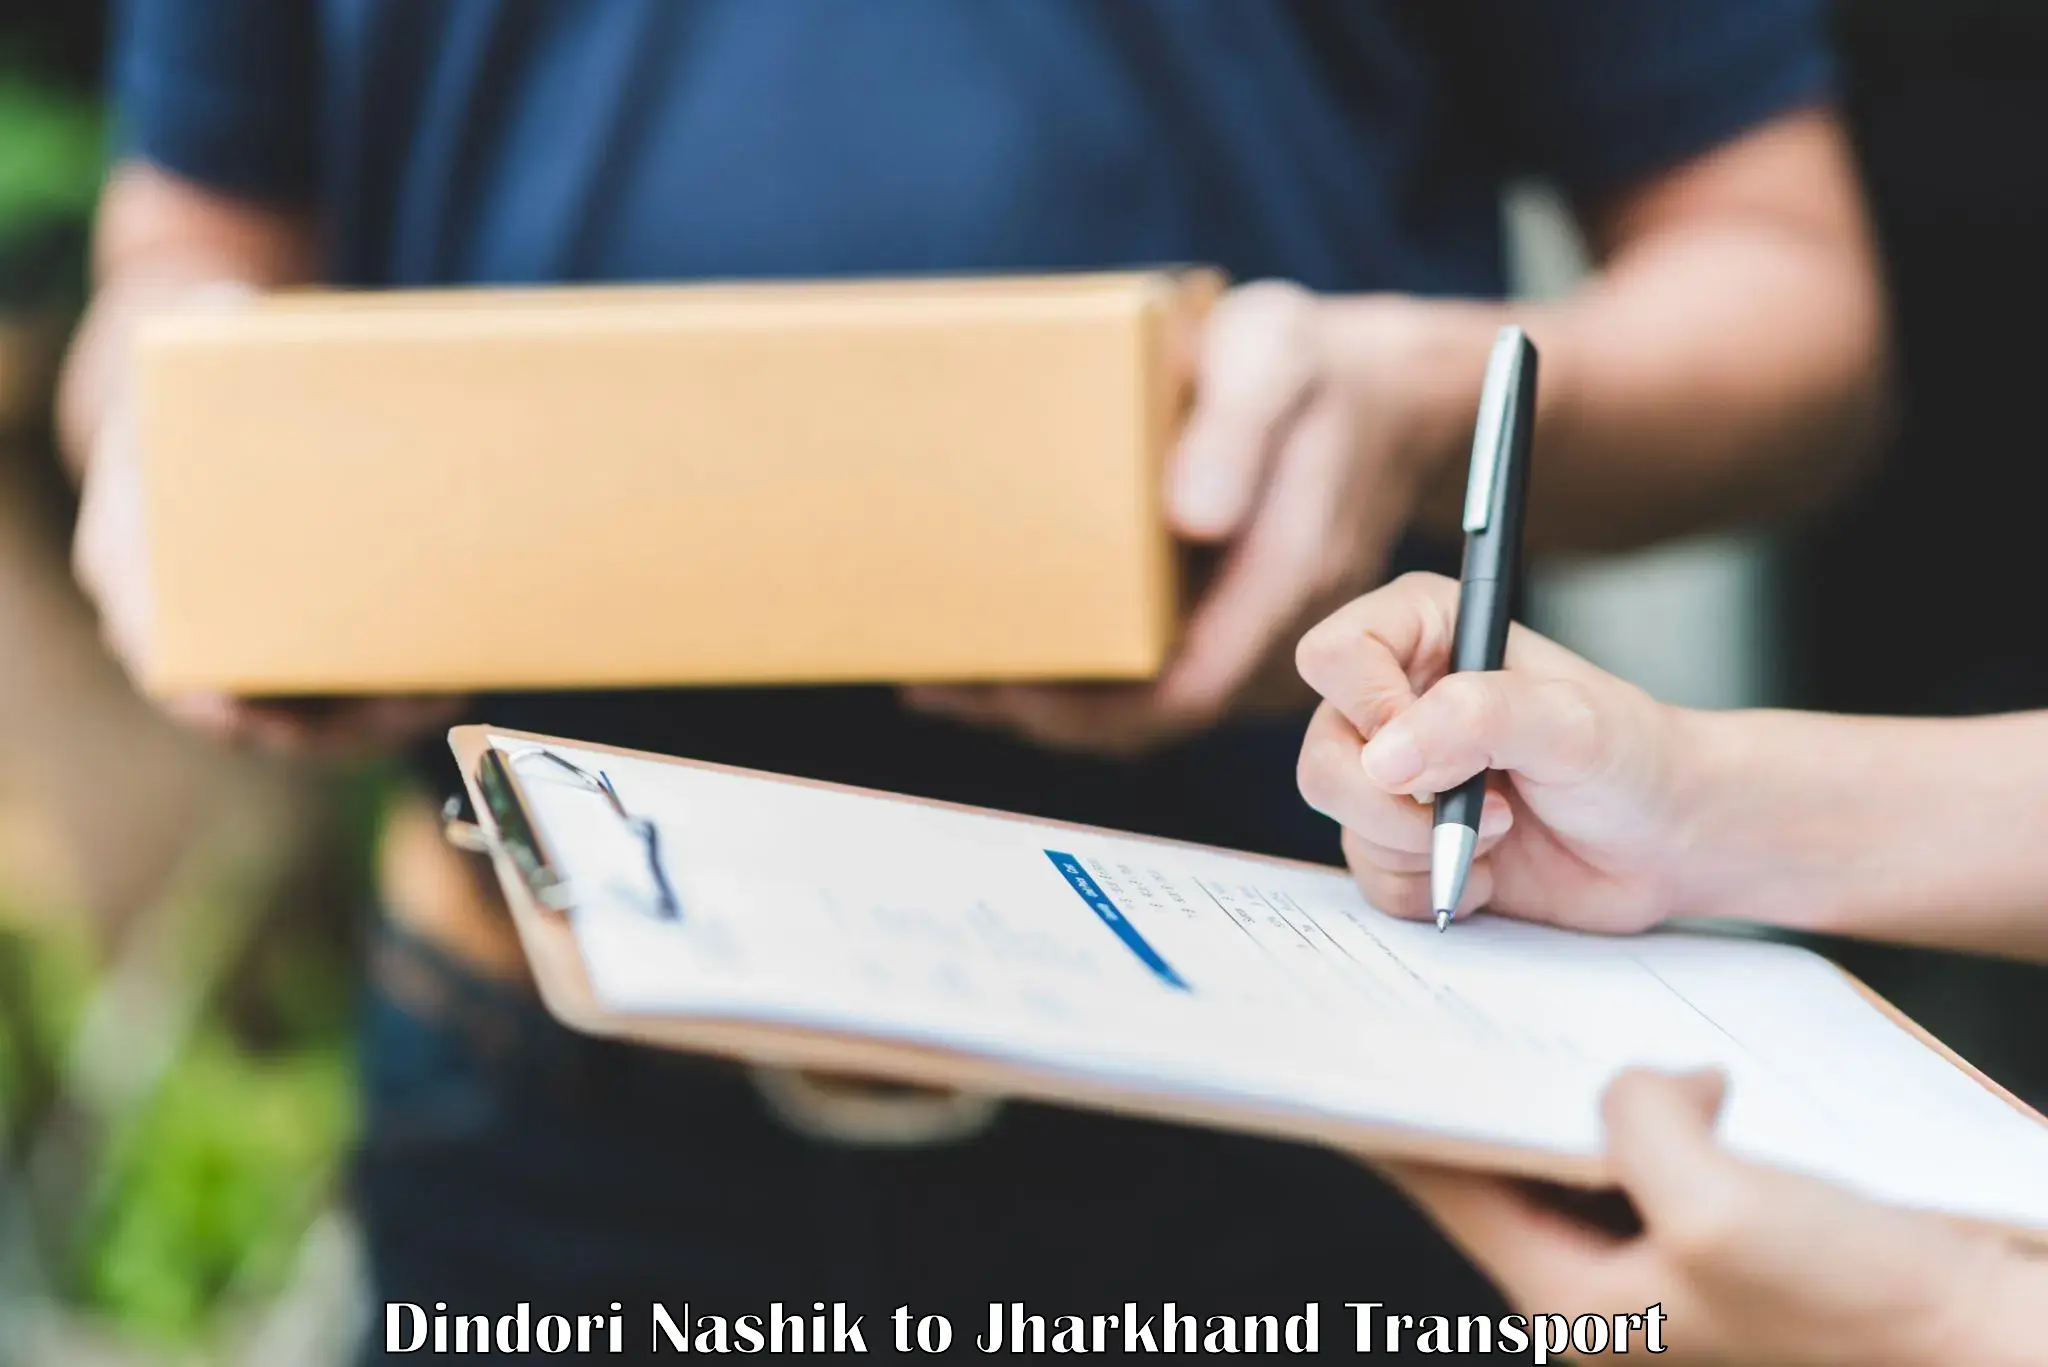 Truck transport companies in India Dindori Nashik to Bokaro